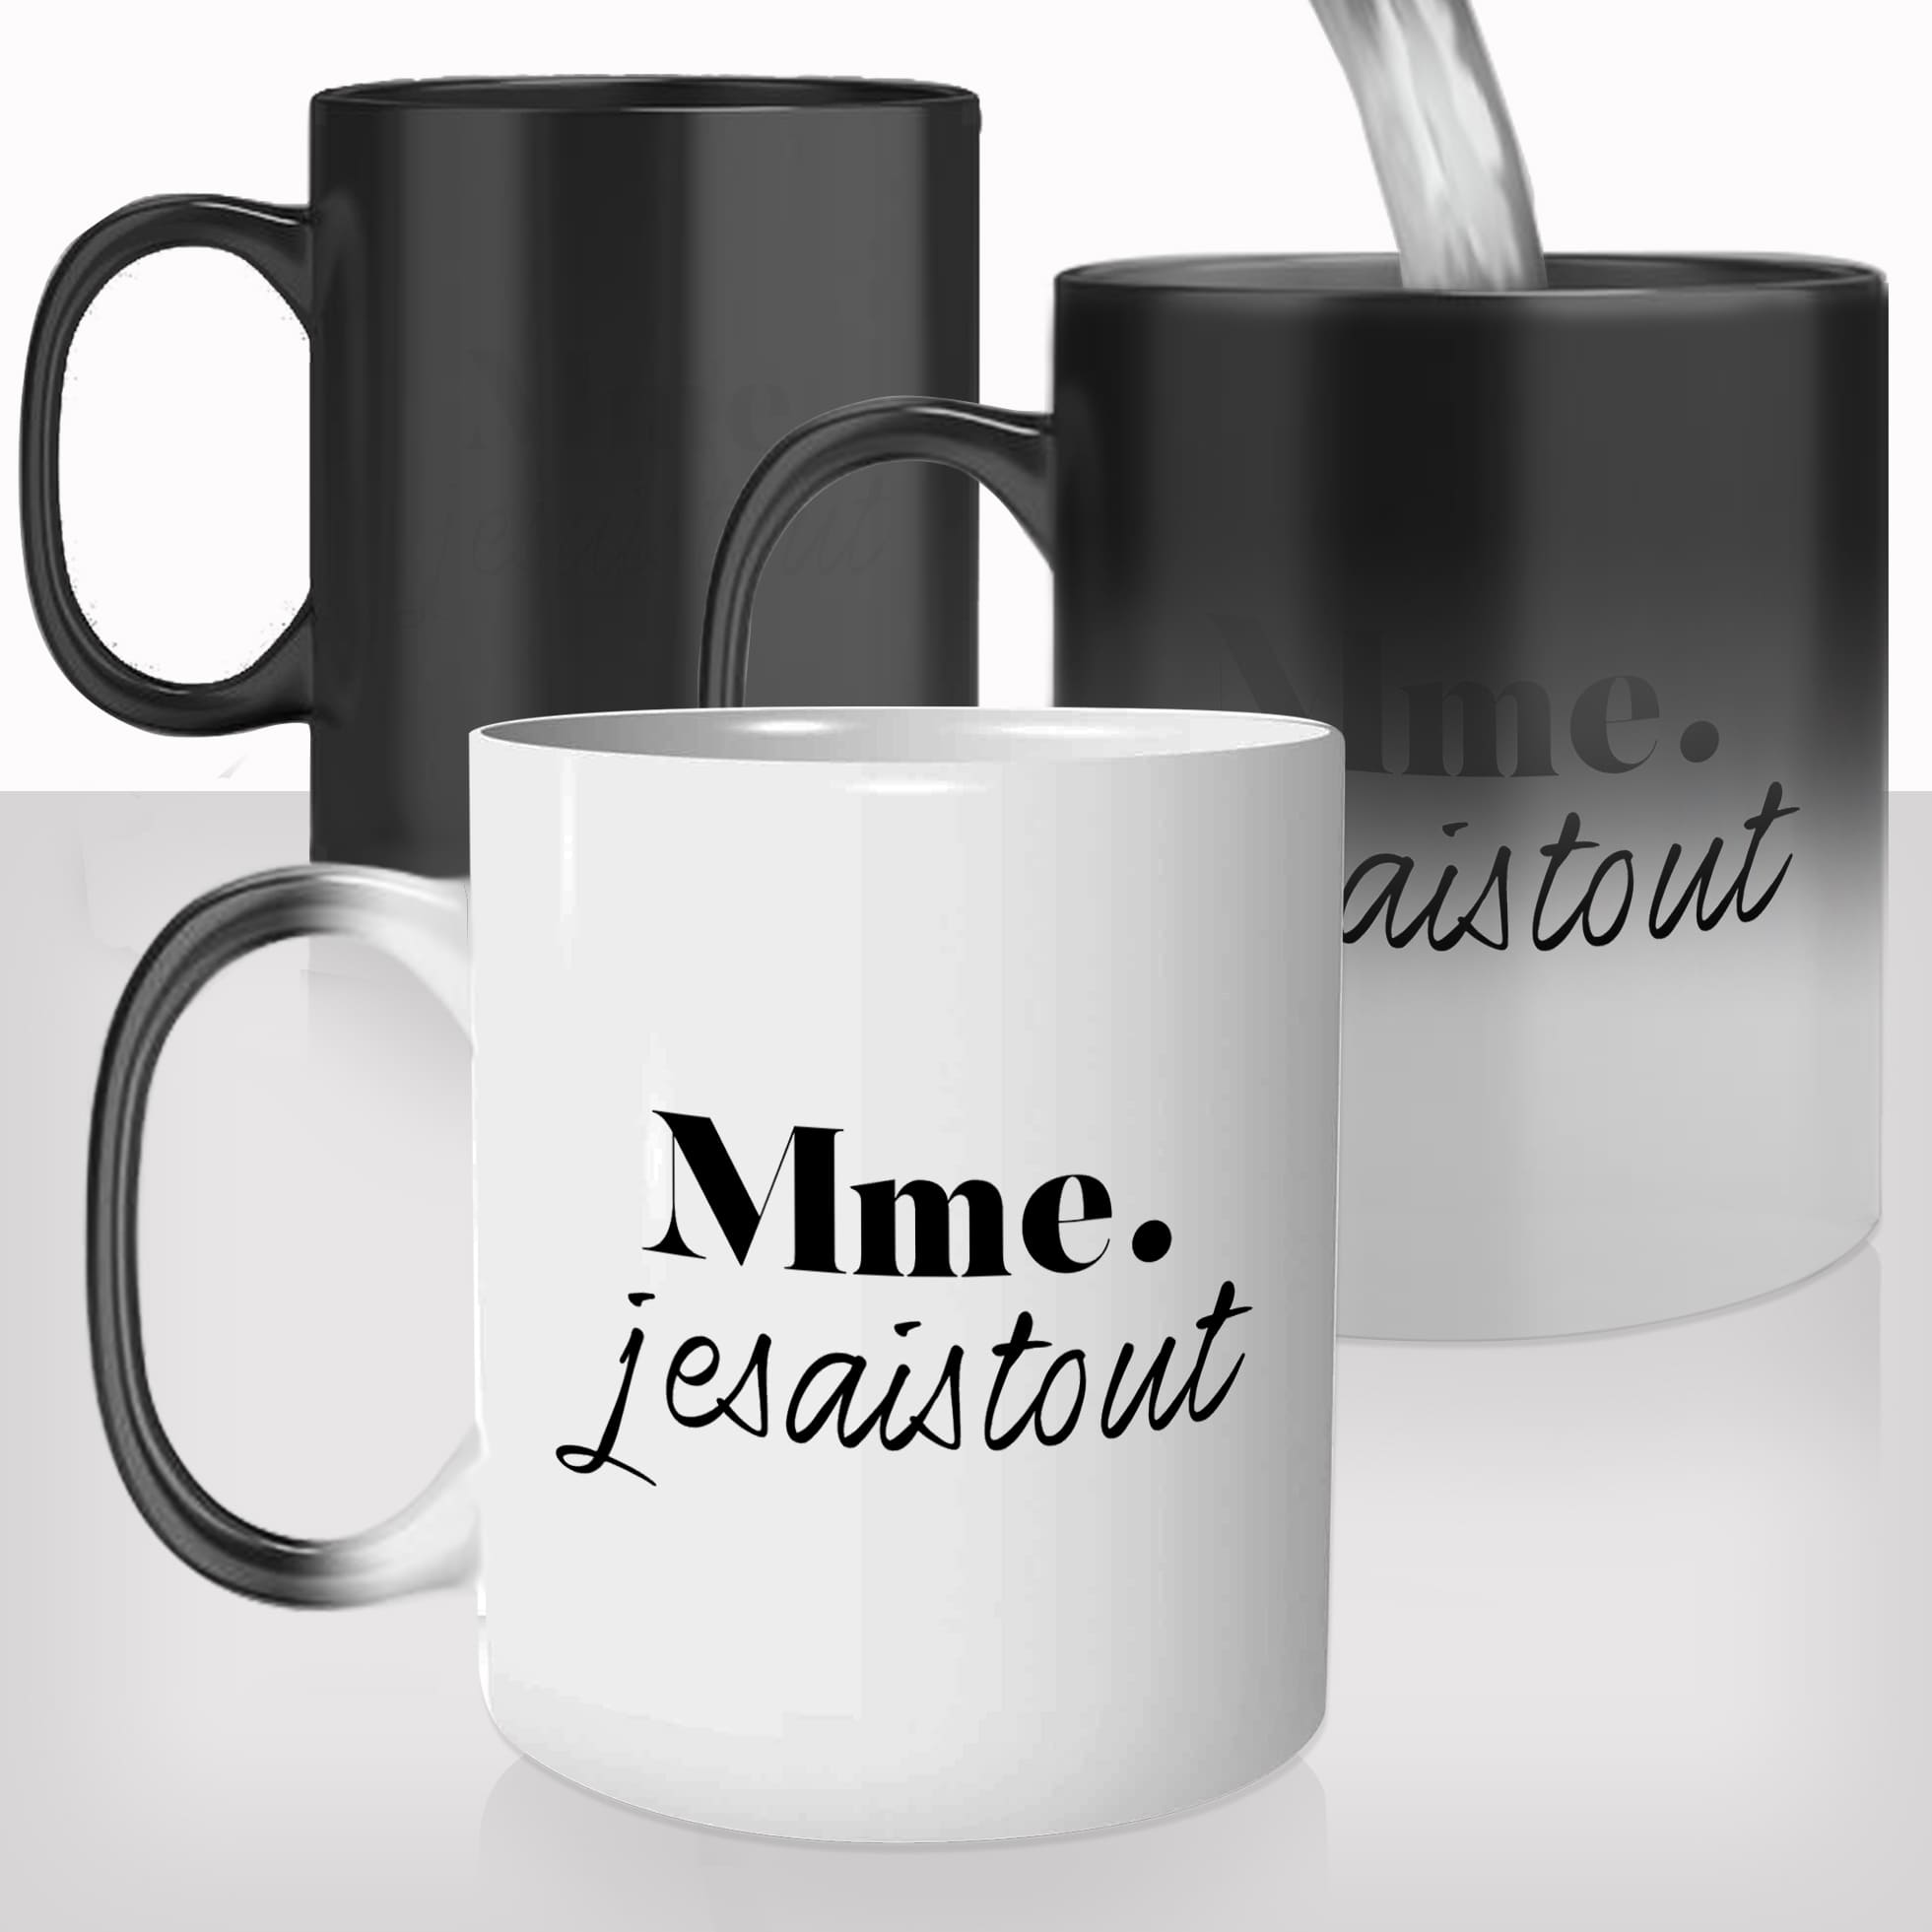 mug-magique-tasse-magic-thermo-reactif-femme-madame-je-sais-tout-défaut-couple-copine-photo-personnalisable-offrir-cadeau-fun-original